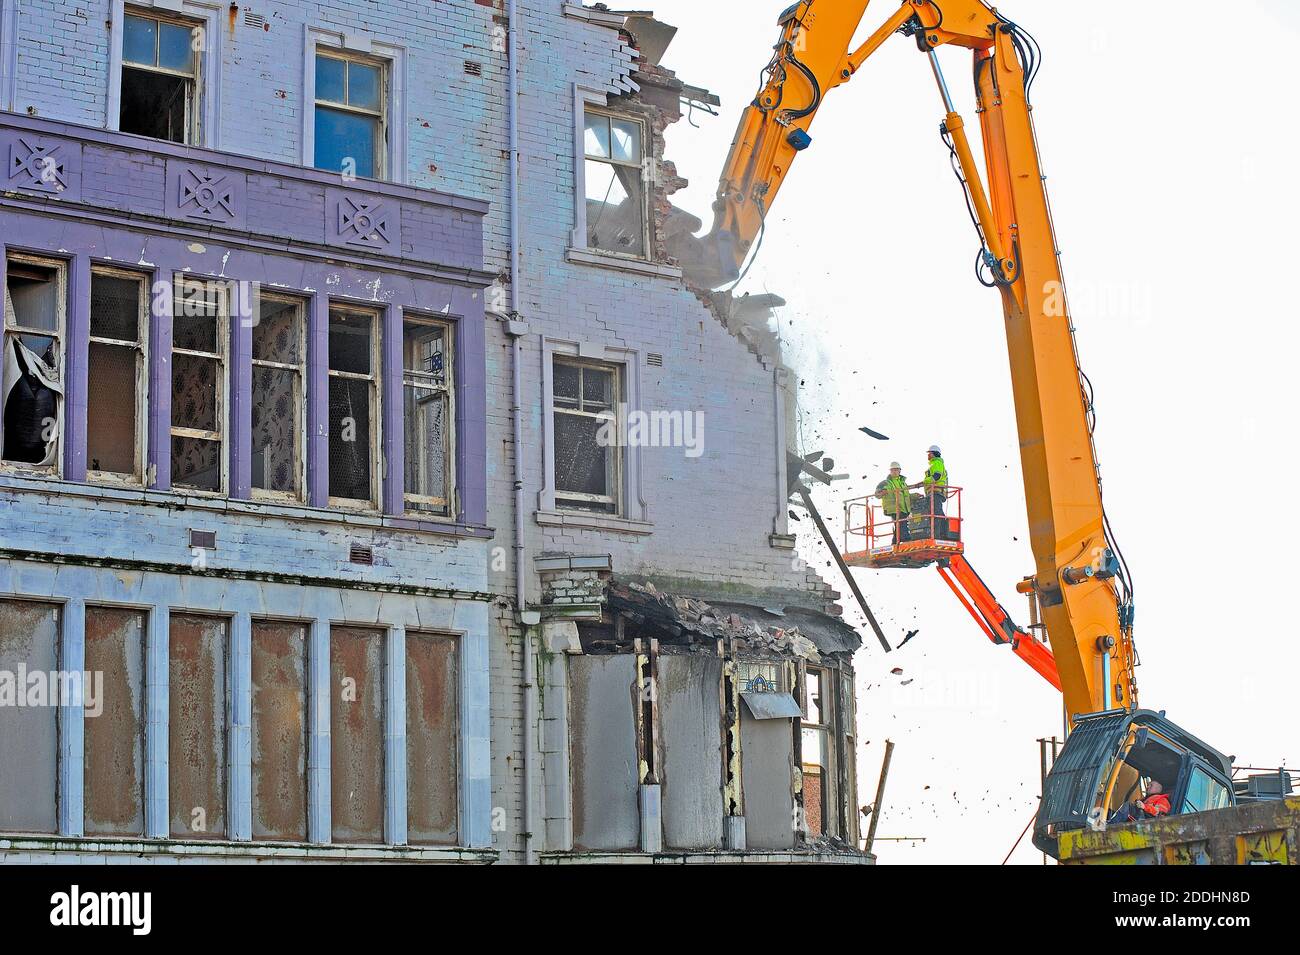 L'hôtel Ambassador à Blackpool fermé depuis 2013 subit Démolition d'urgence après la crainte que le bâtiment pourrait s'effondrer.le bâtiment j'avais été converti en appartements de luxe Banque D'Images